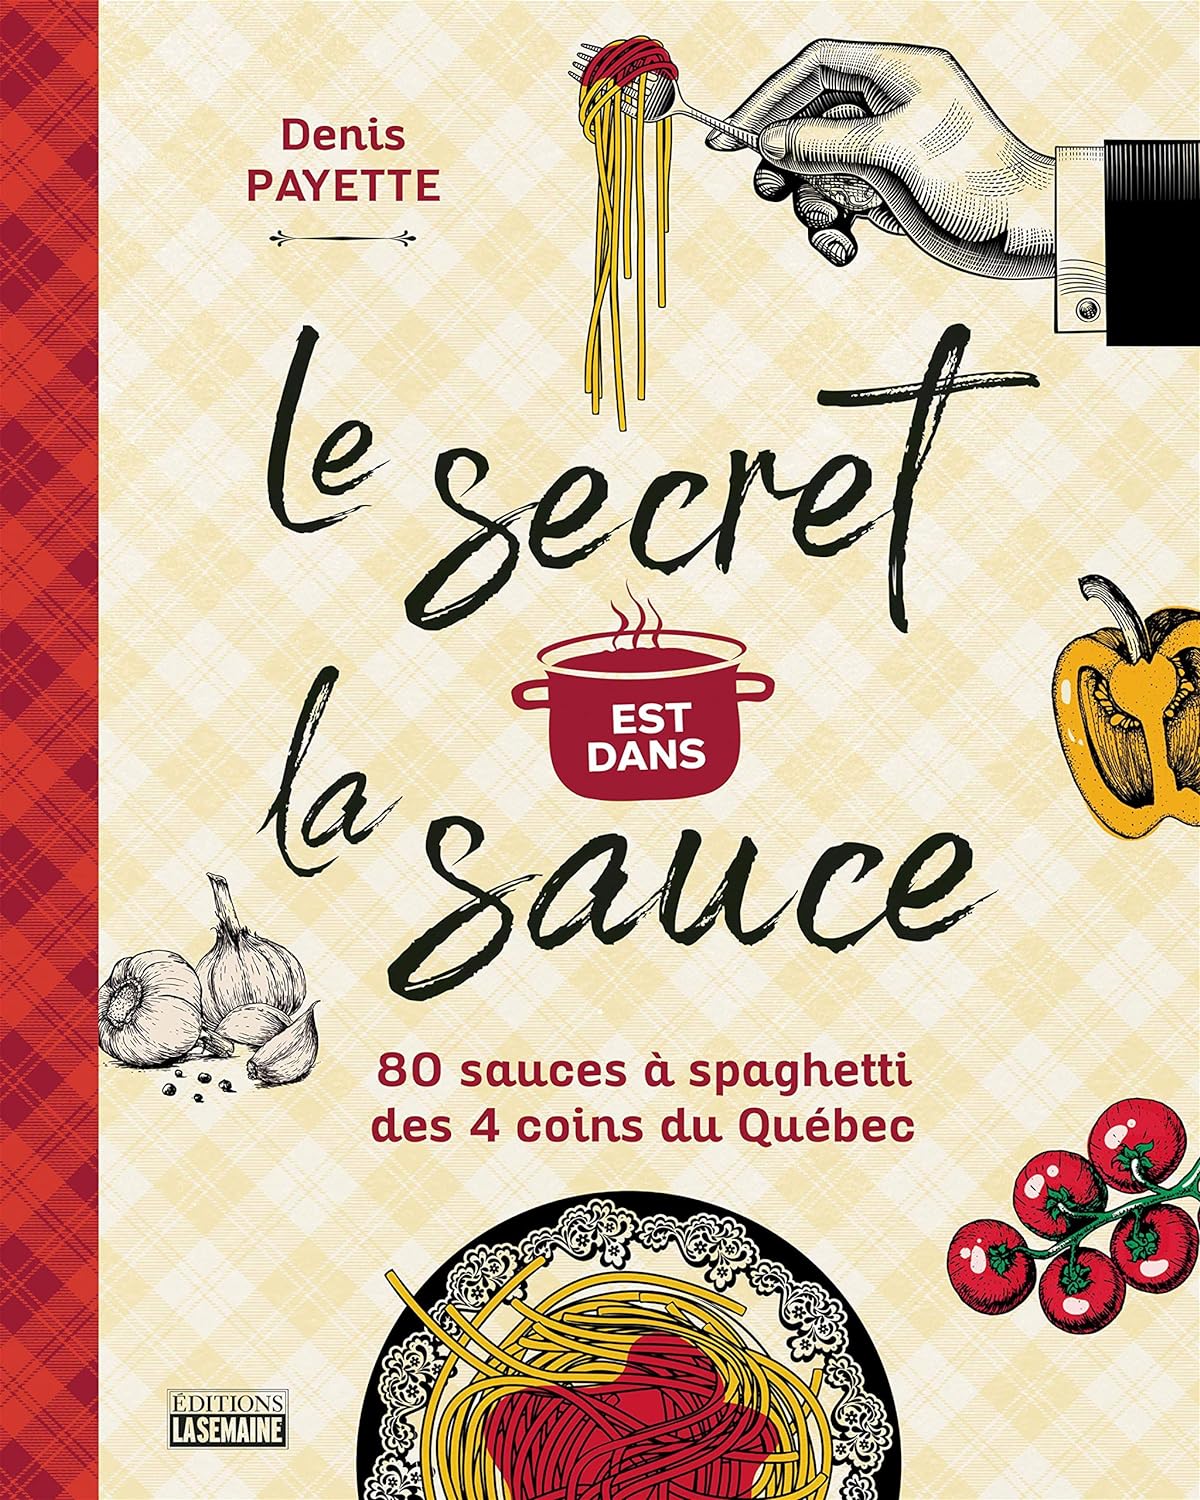 Le secret est dans la sauce: 80 recettes de sauces à spaghetti des 4 coins du Québec - Denis Payette